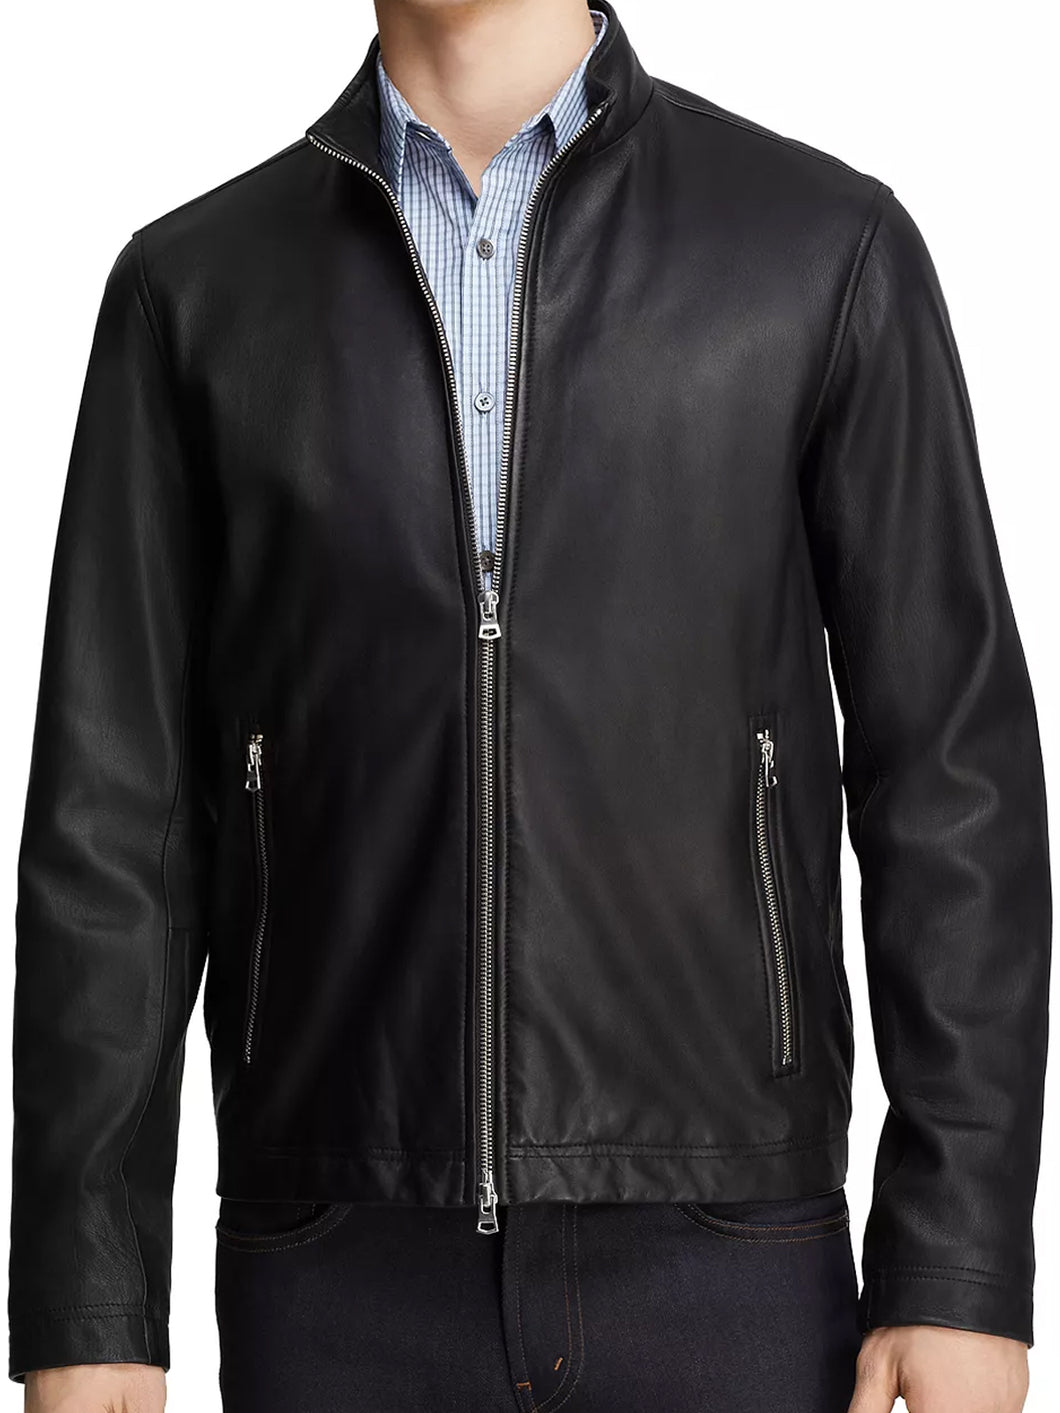 Men's Polished Black Leather Jacket - Boneshia